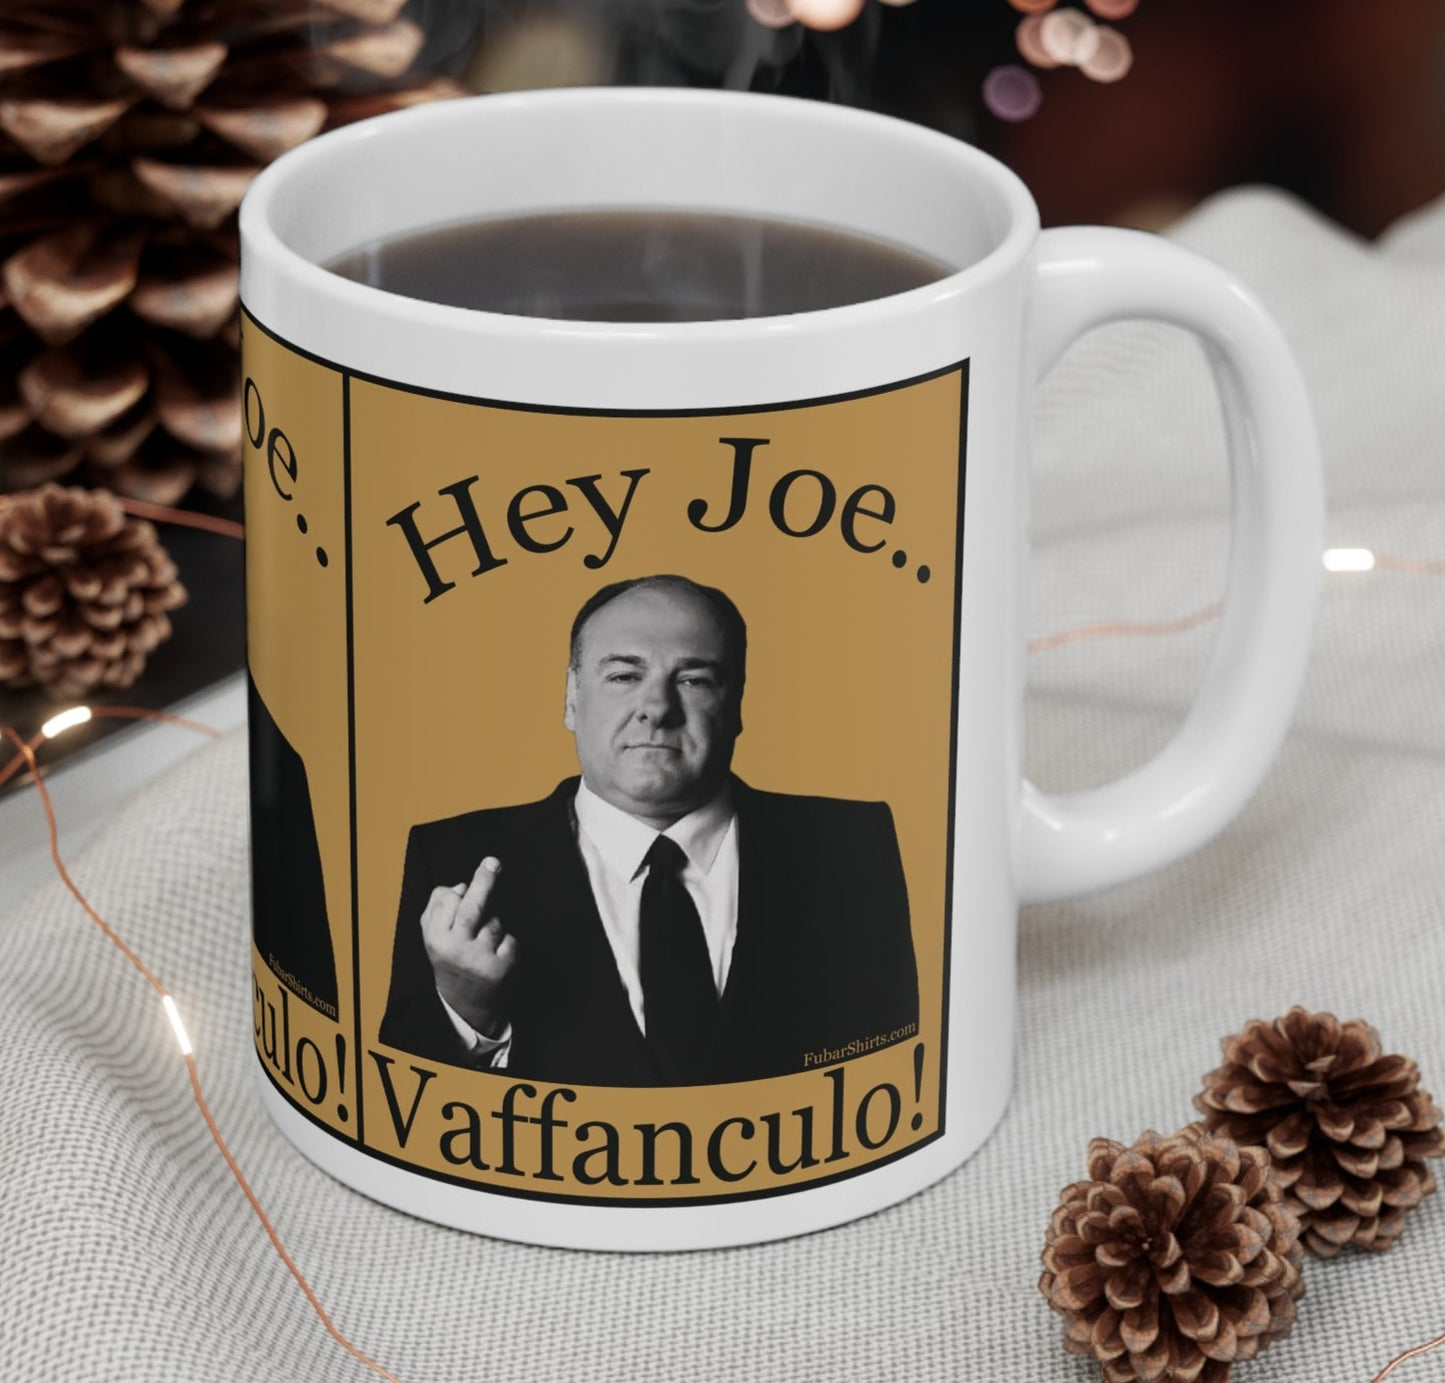 Hey Joe, Fuck You by Tony Soprano Mug. Fubarshirts.com